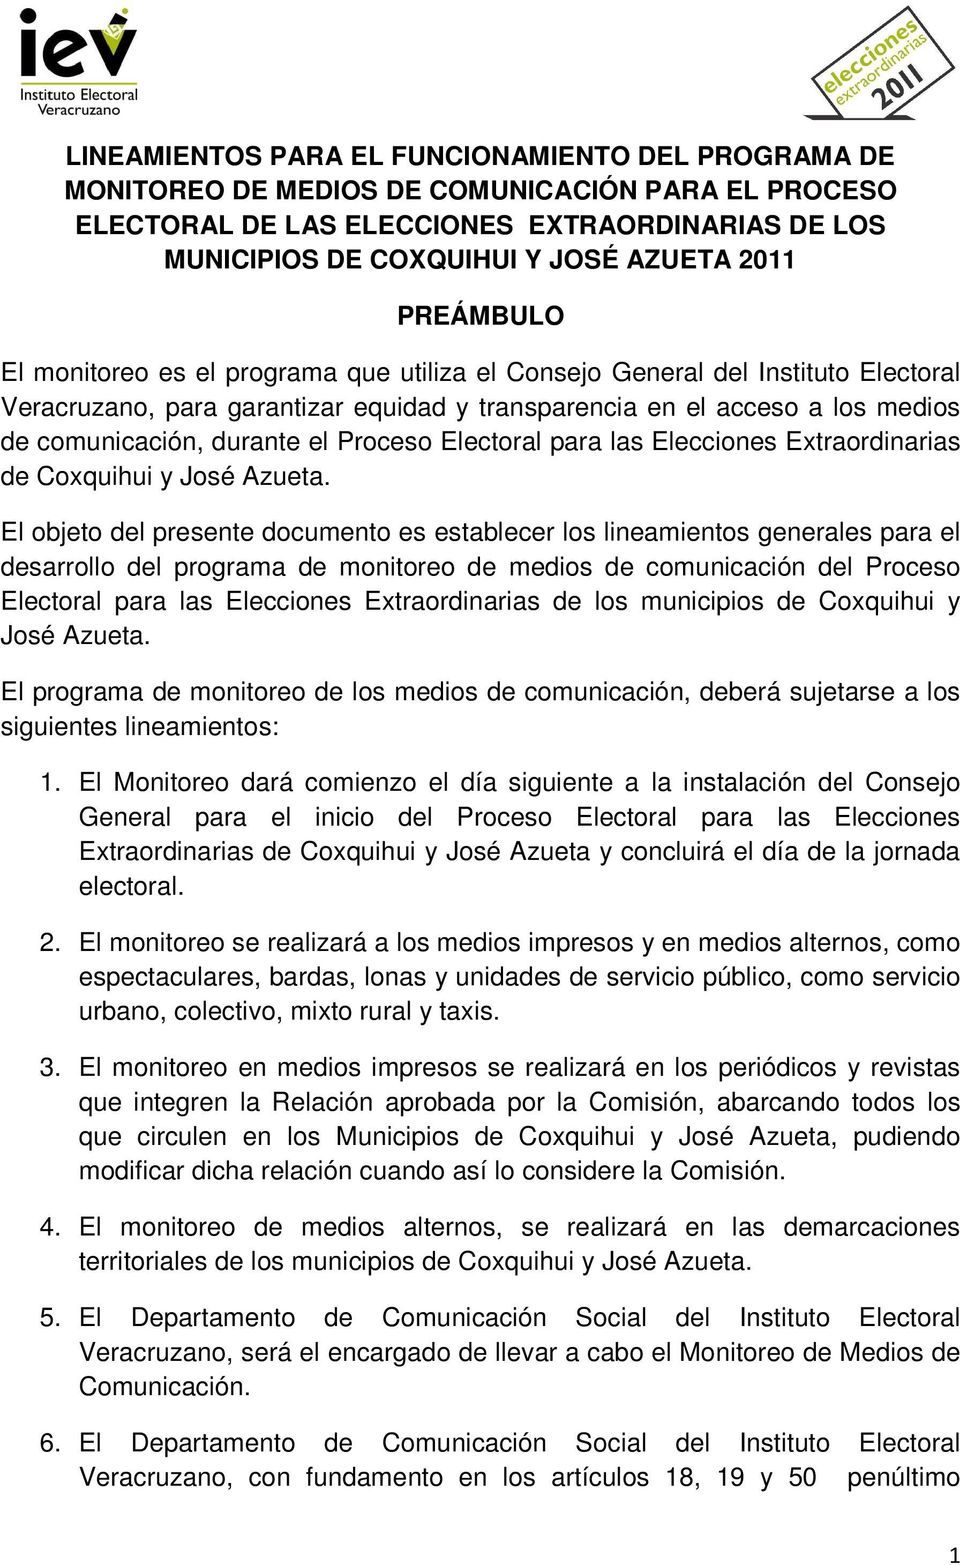 Proceso Electoral para las Elecciones Extraordinarias de Coxquihui y José Azueta.